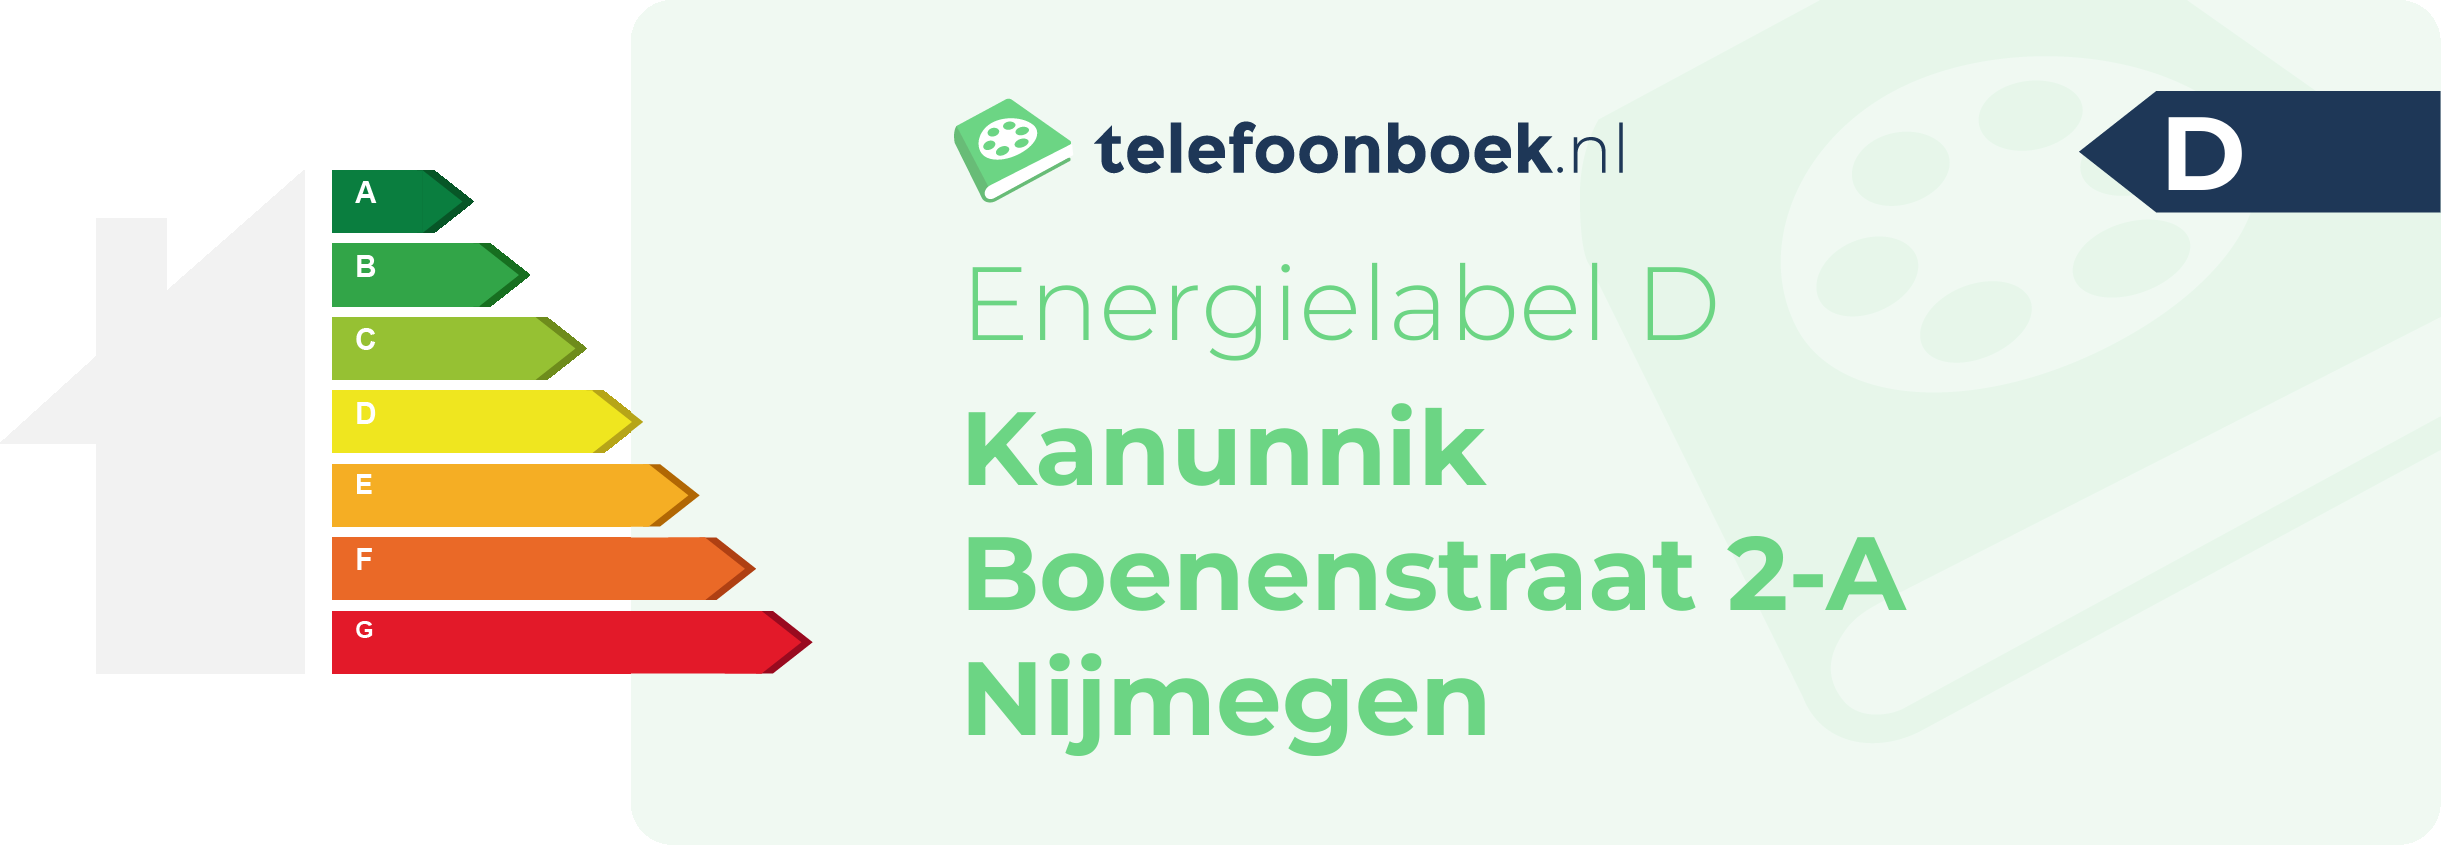 Energielabel Kanunnik Boenenstraat 2-A Nijmegen